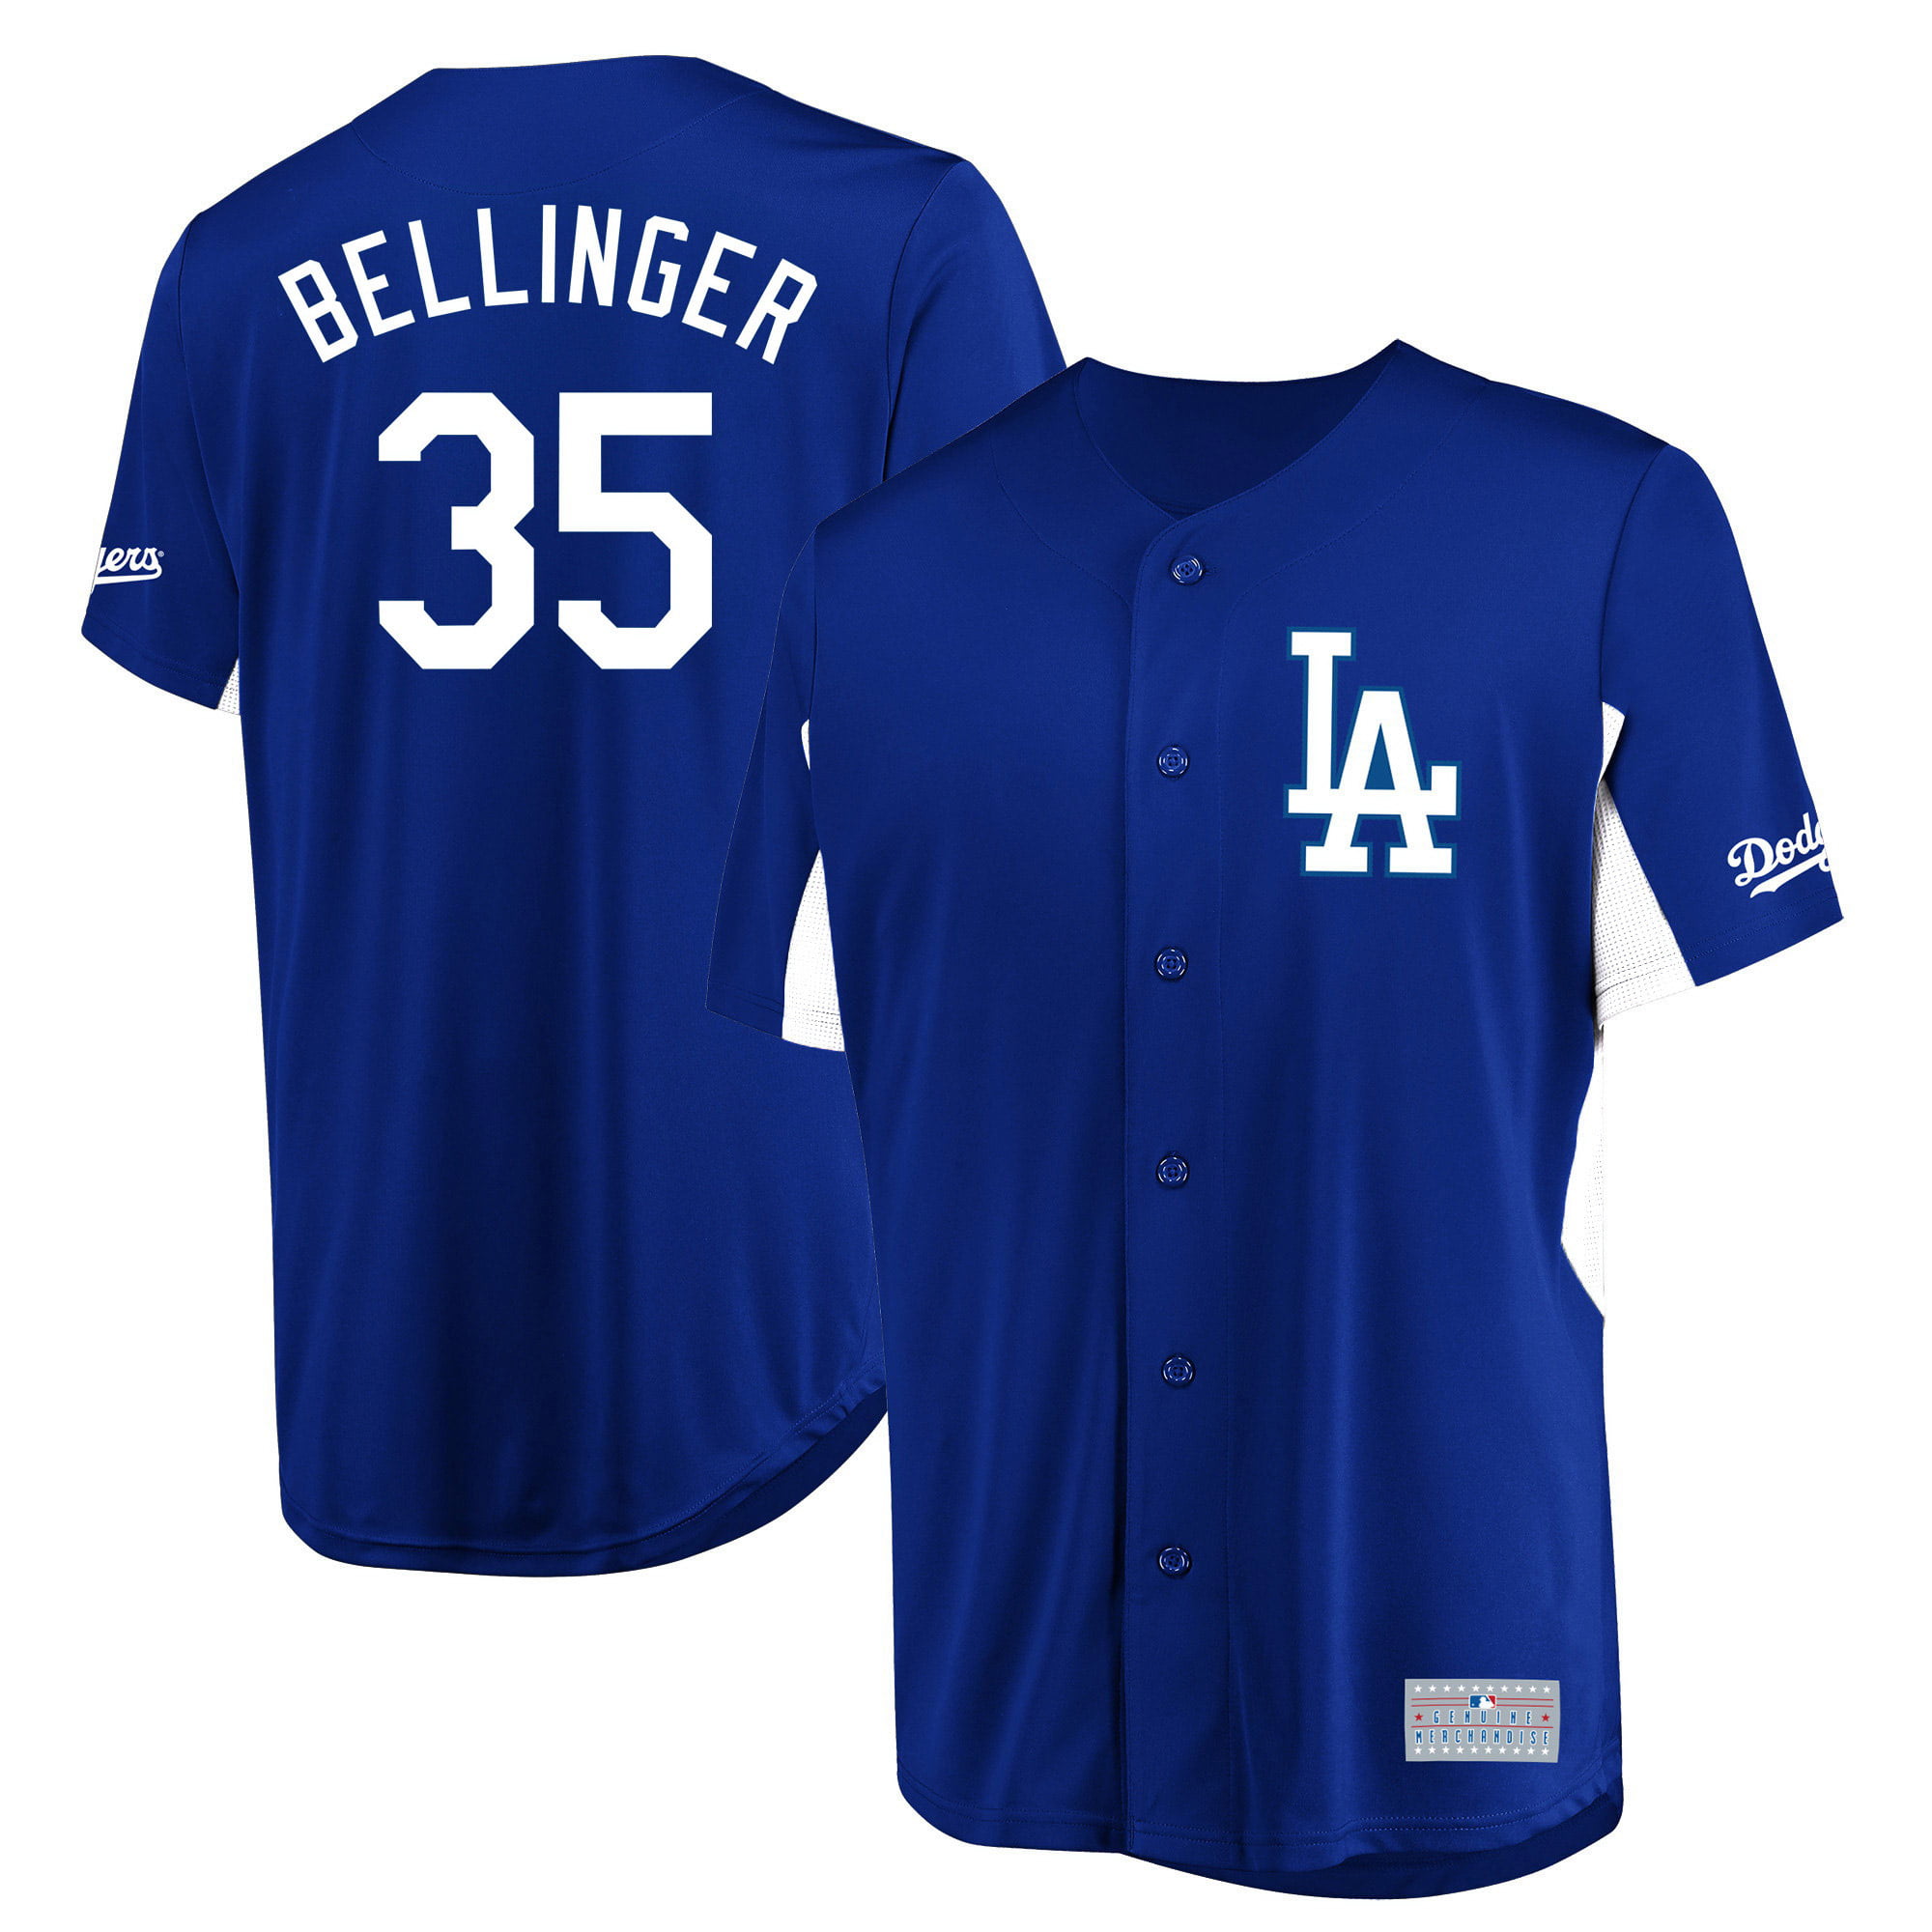 blue bellinger jersey